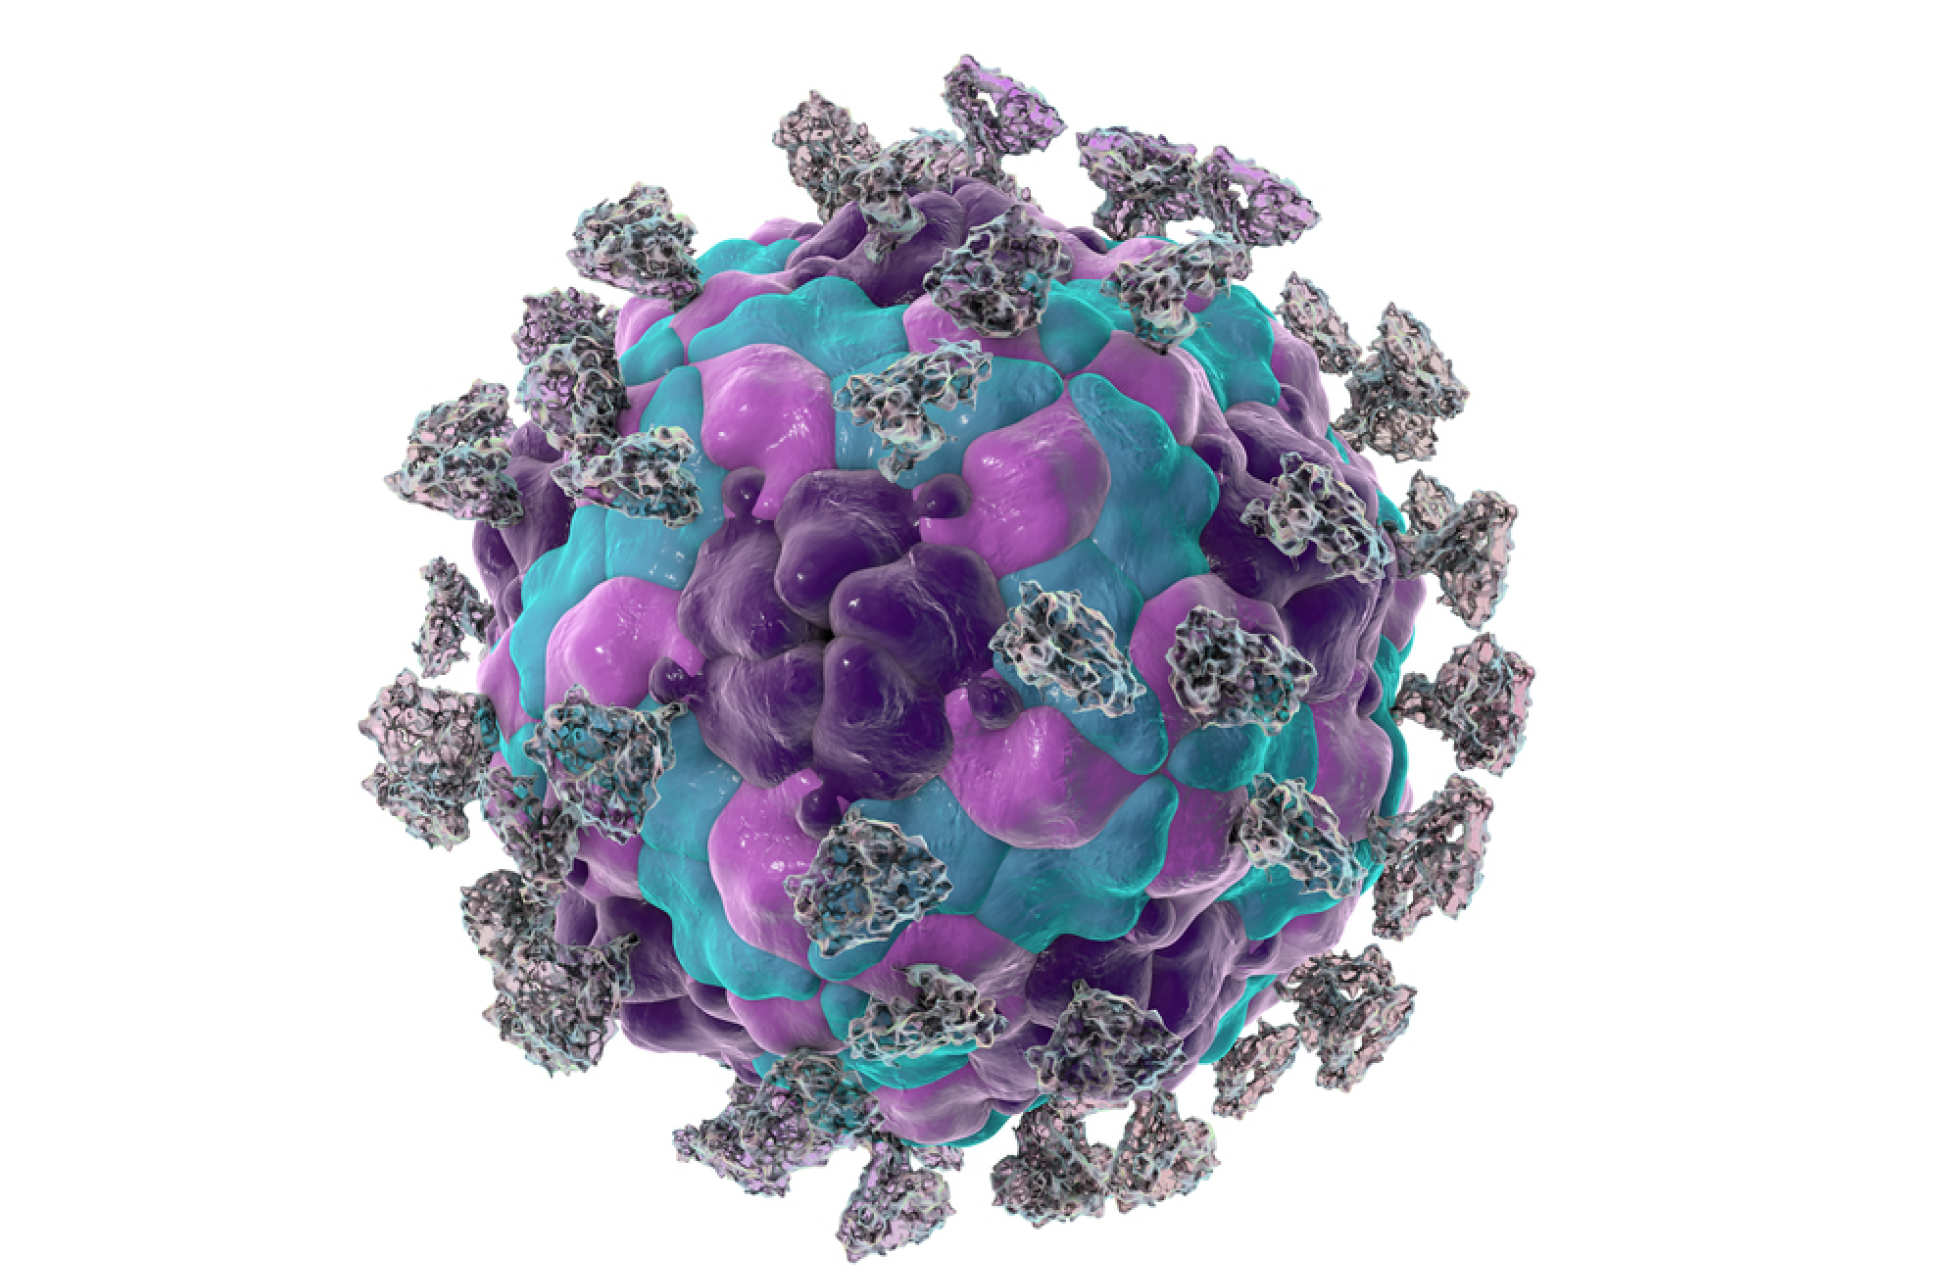 An illustration of an Enterovirus